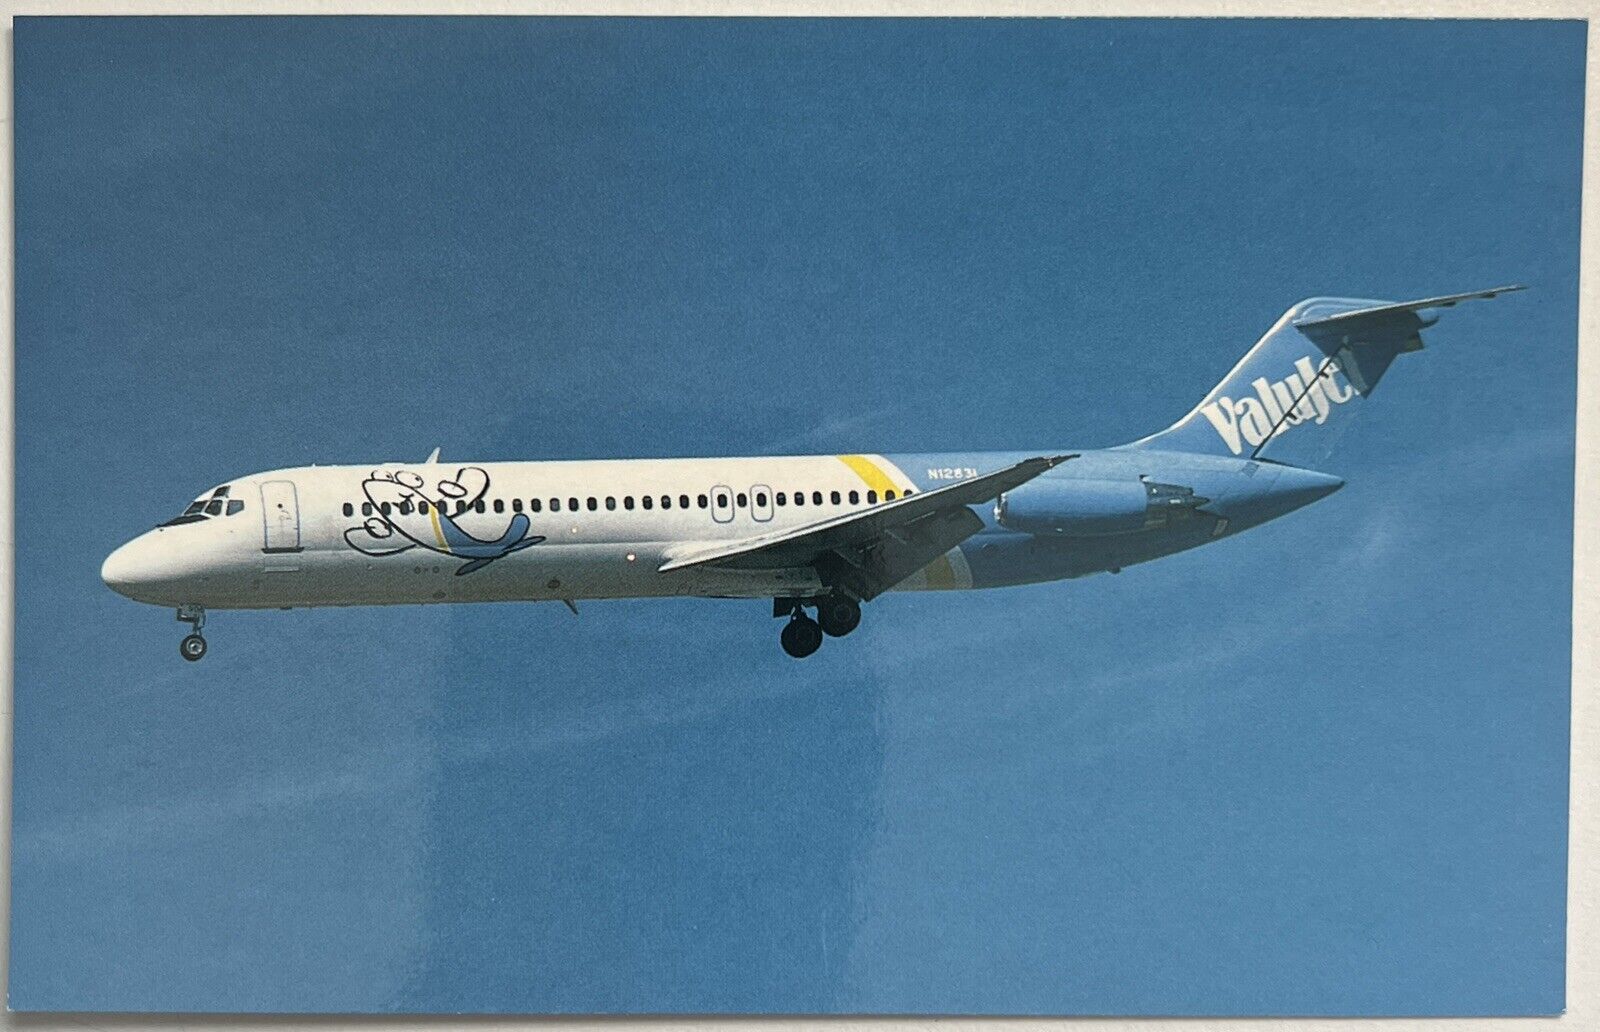 Valujet Airlines McDonnell Douglas DC-9 Vintage Postcard Airline Aircraft